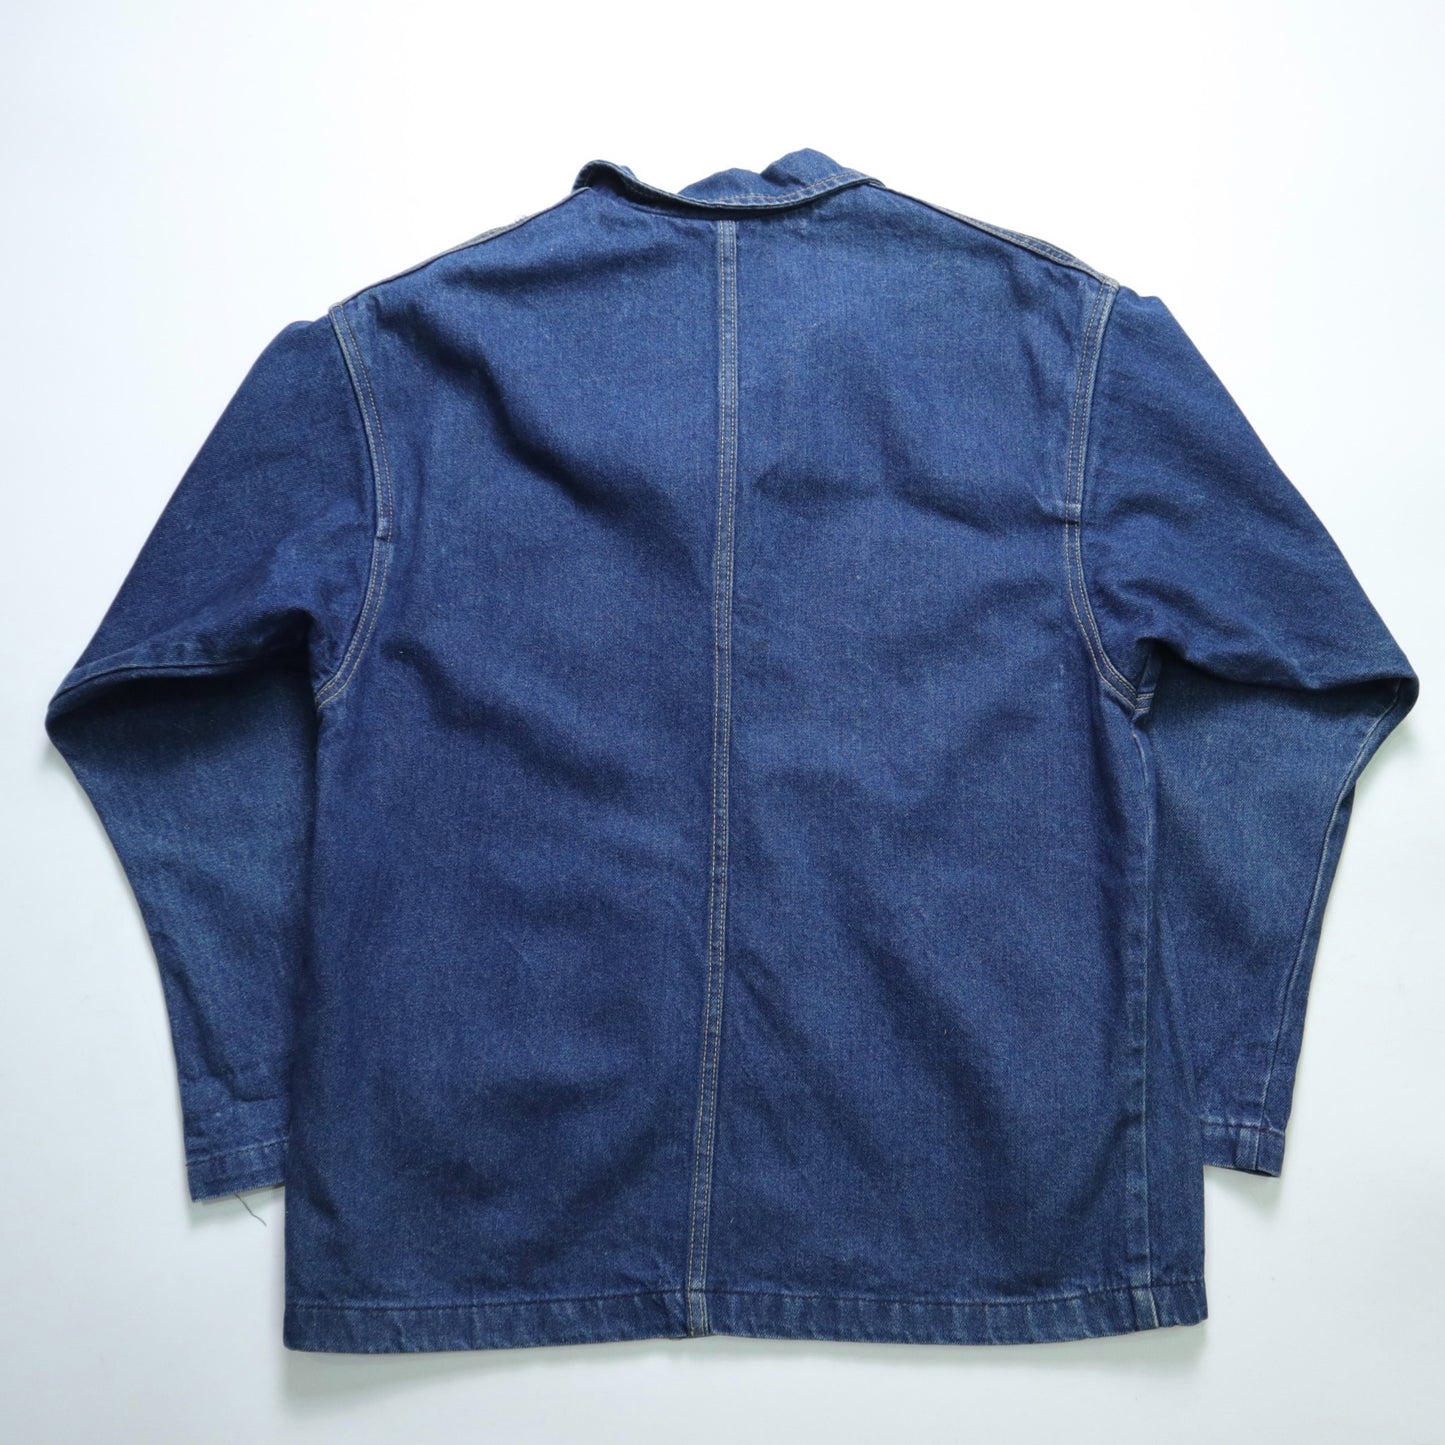 1980s LEE American-made dark denim jacket